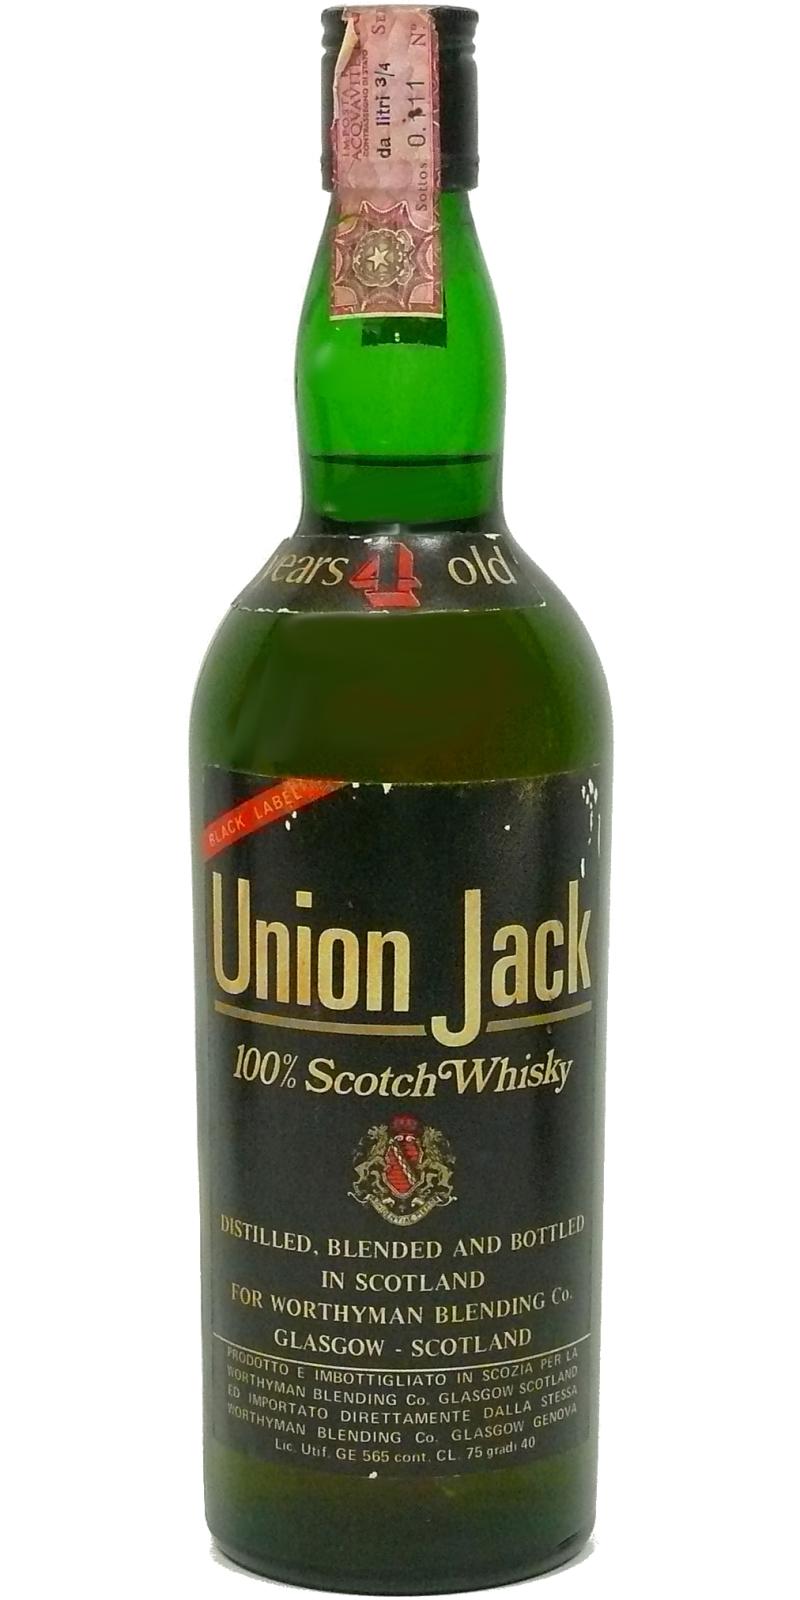 Union Jack 04-year-old